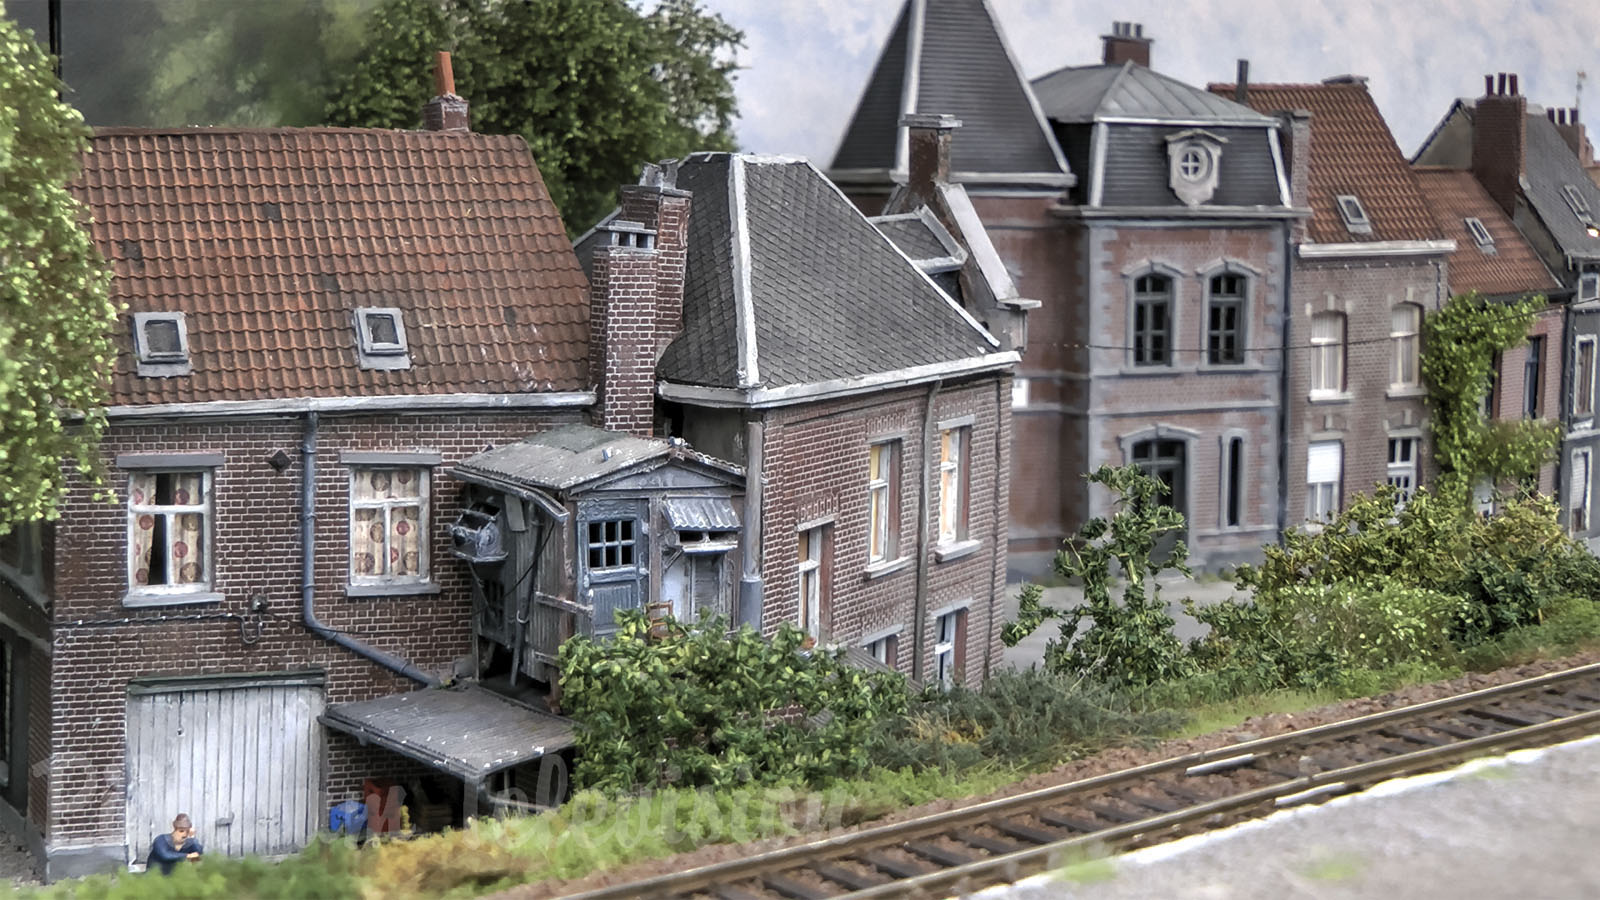 Plastico Ferroviario in Scala HO del Belgio - Diorama Doublenghien con Treni Elettrici